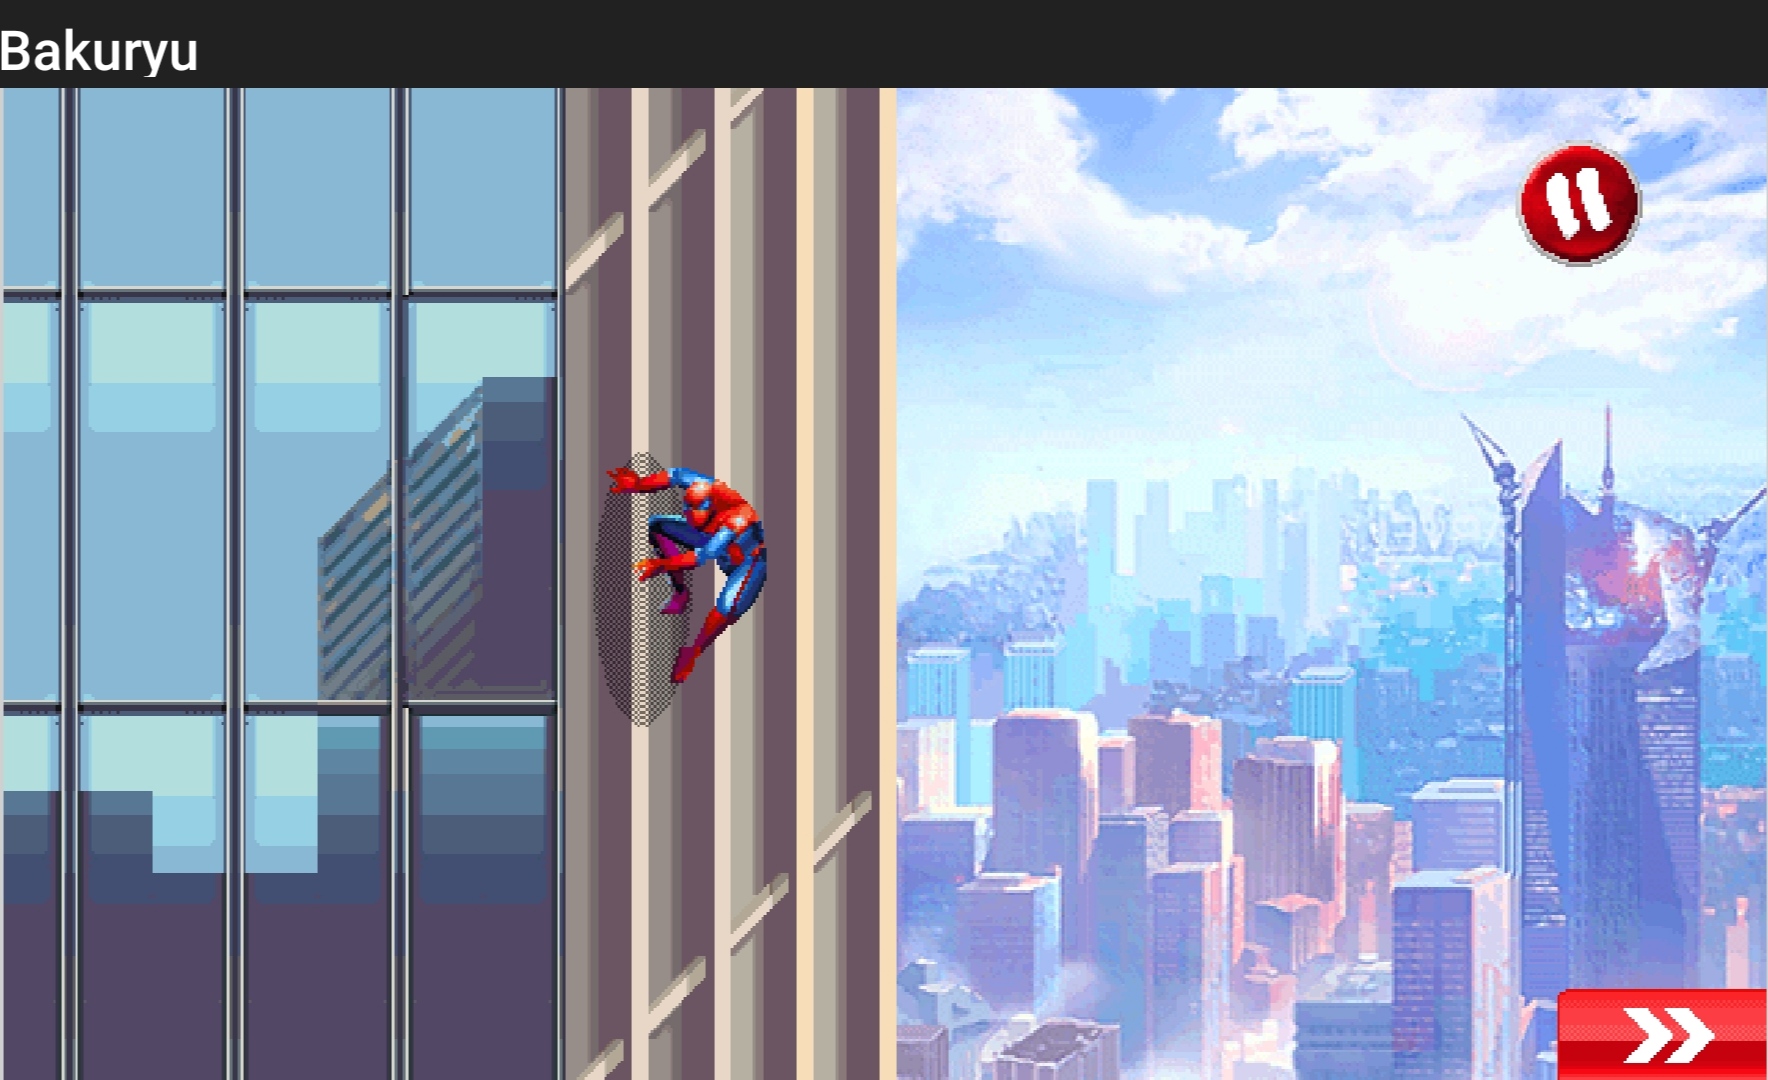 [SP Hack] The Amazing Spider Man - Siêu Nhện Tái Xuất Hack Nâng Cấp Kỹ Năng Free By Bakuryu